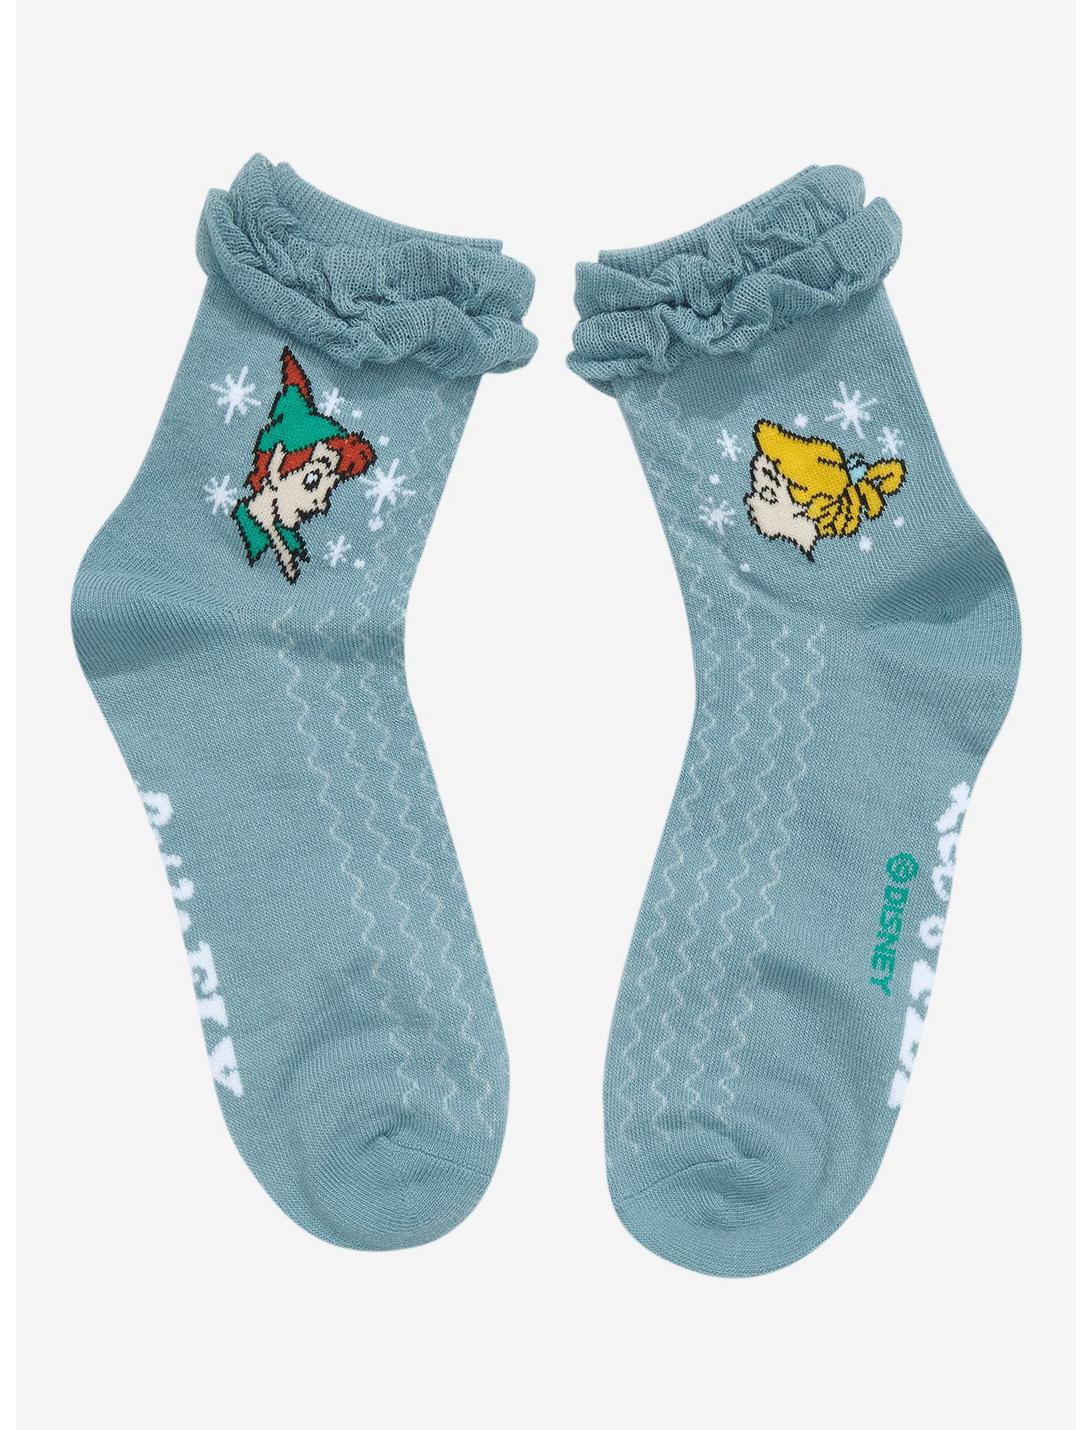 Disney Peter Pan Duo Ruffle Ankle Socks, , hi-res